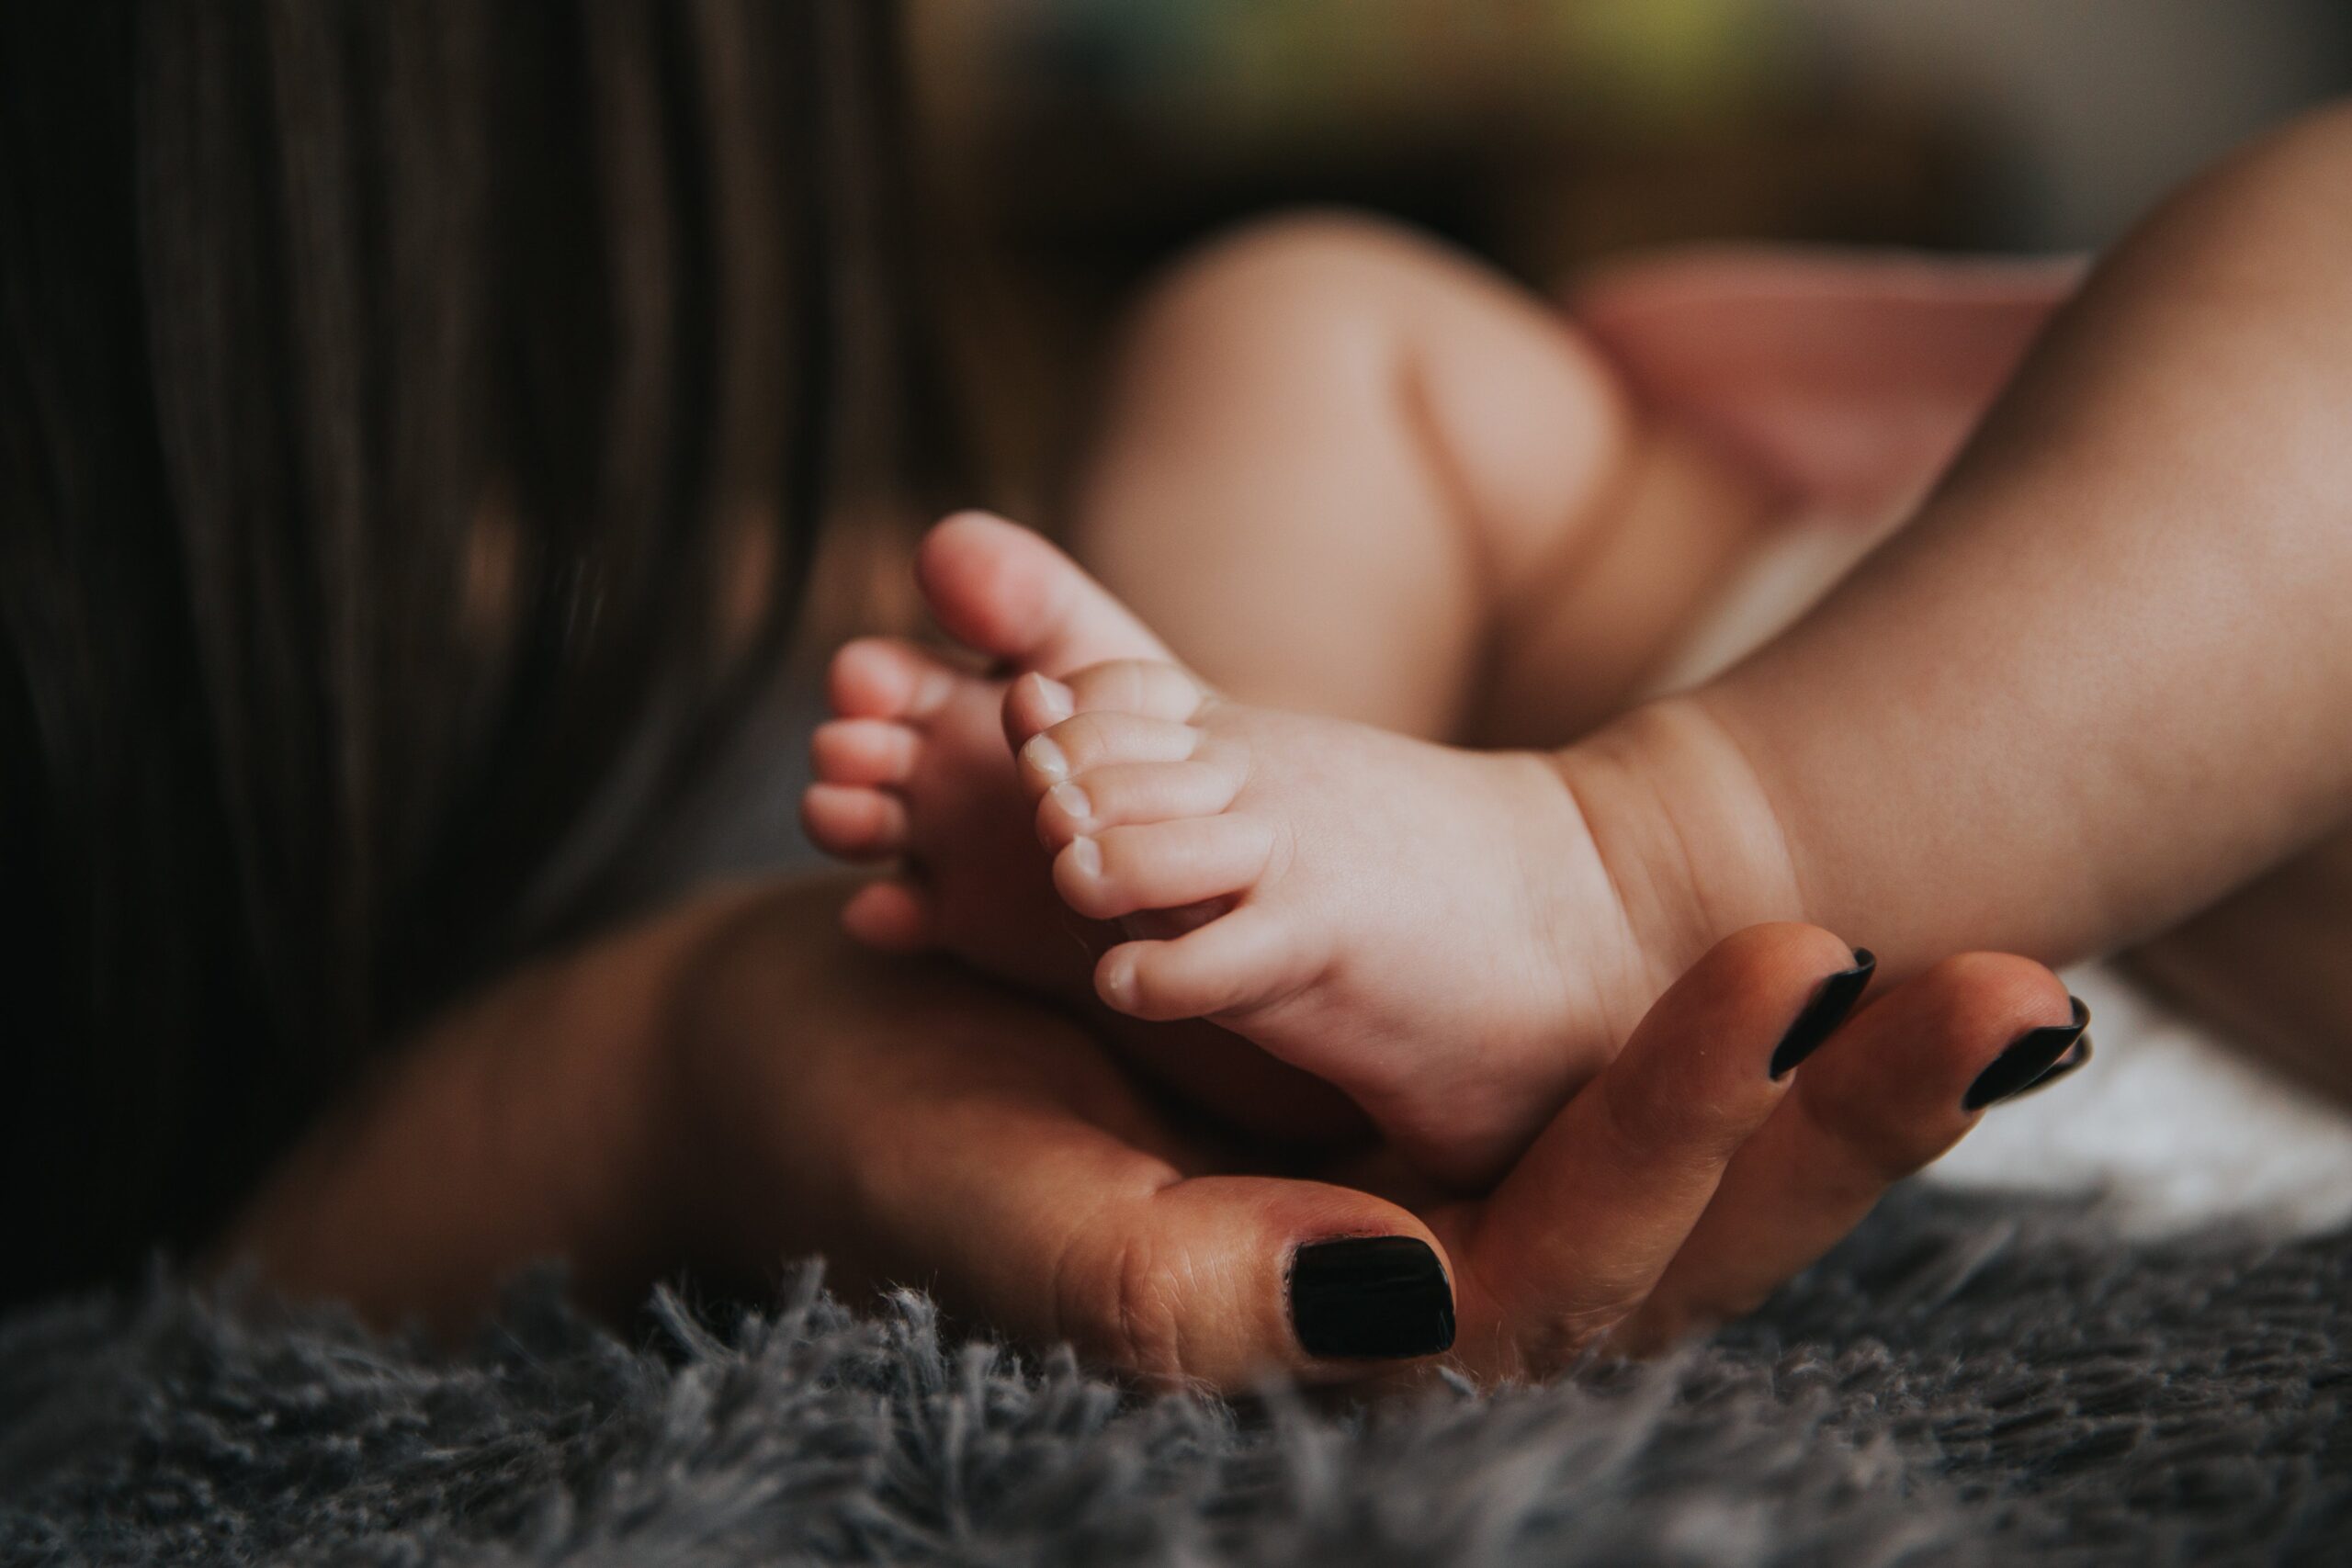 Woman holding baby's feet: losing yourself motherhood